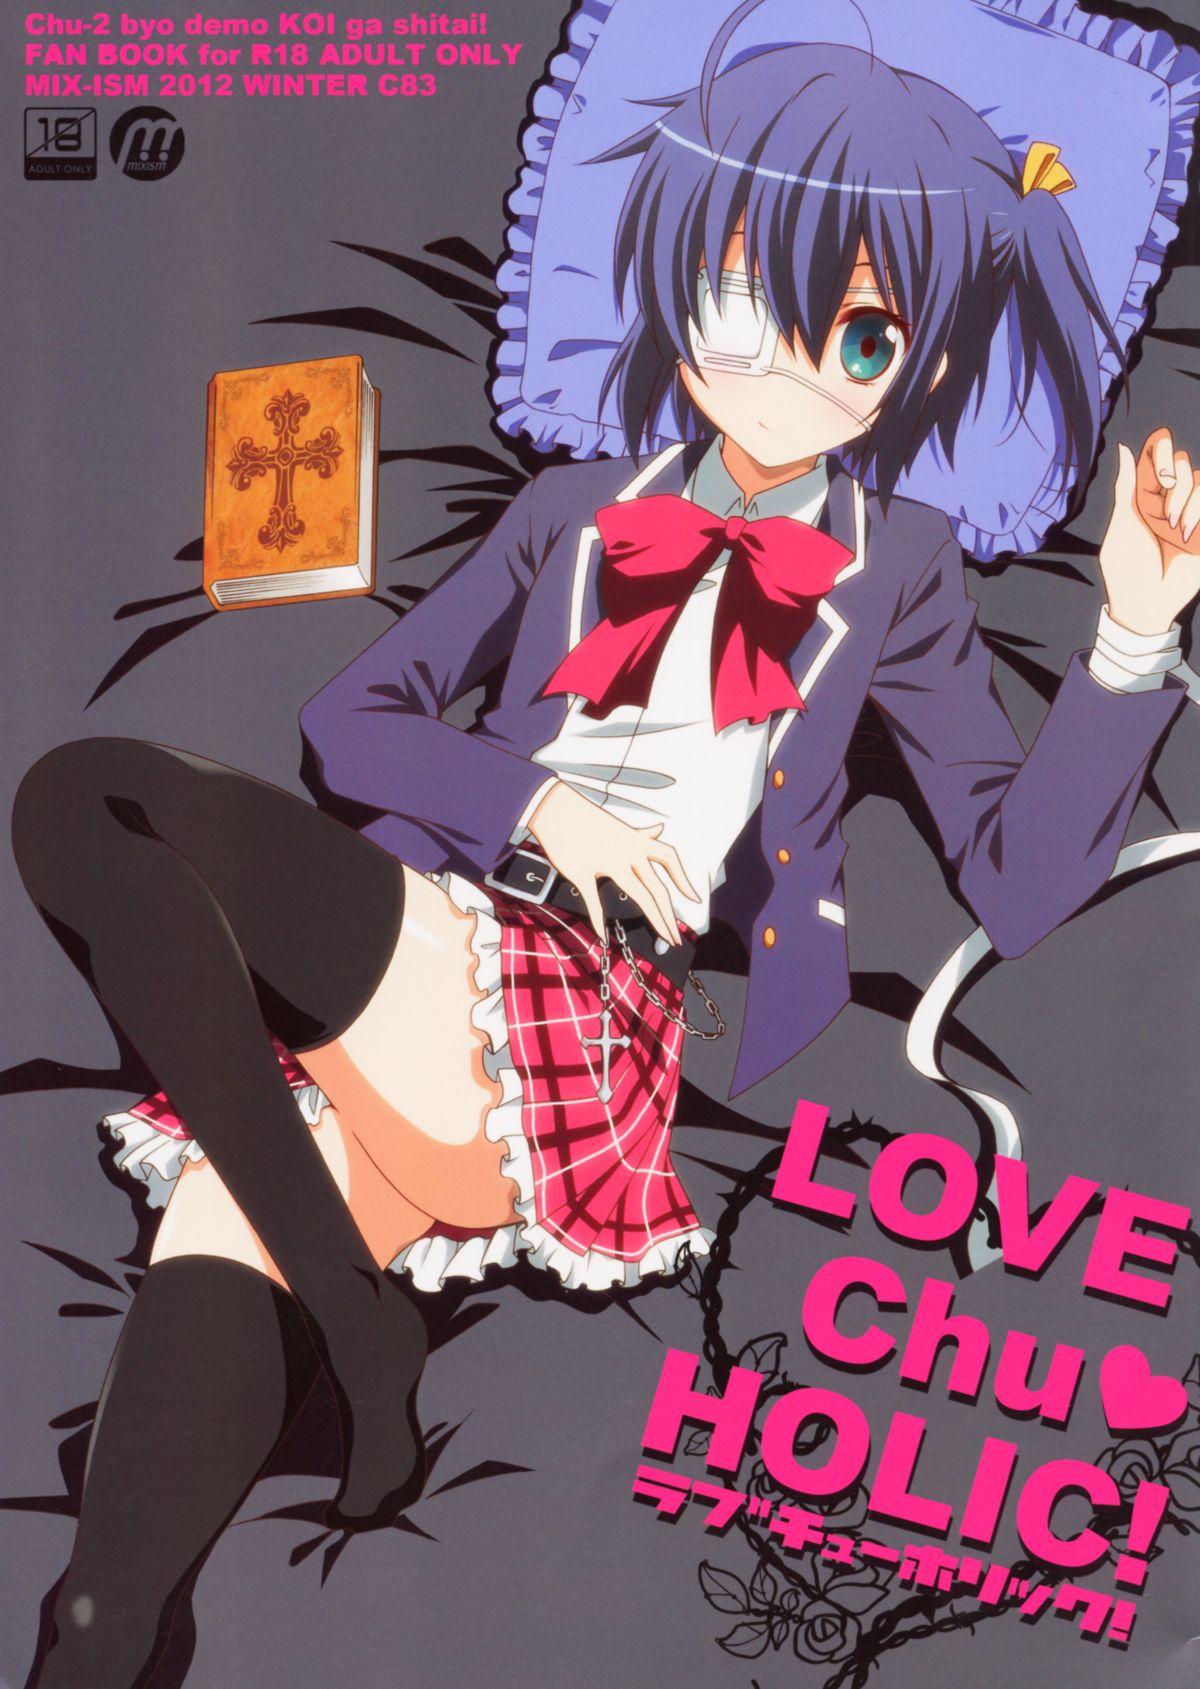 All LOVE Chu♥ HOLIC! - Chuunibyou demo koi ga shitai Asslicking - Picture 1